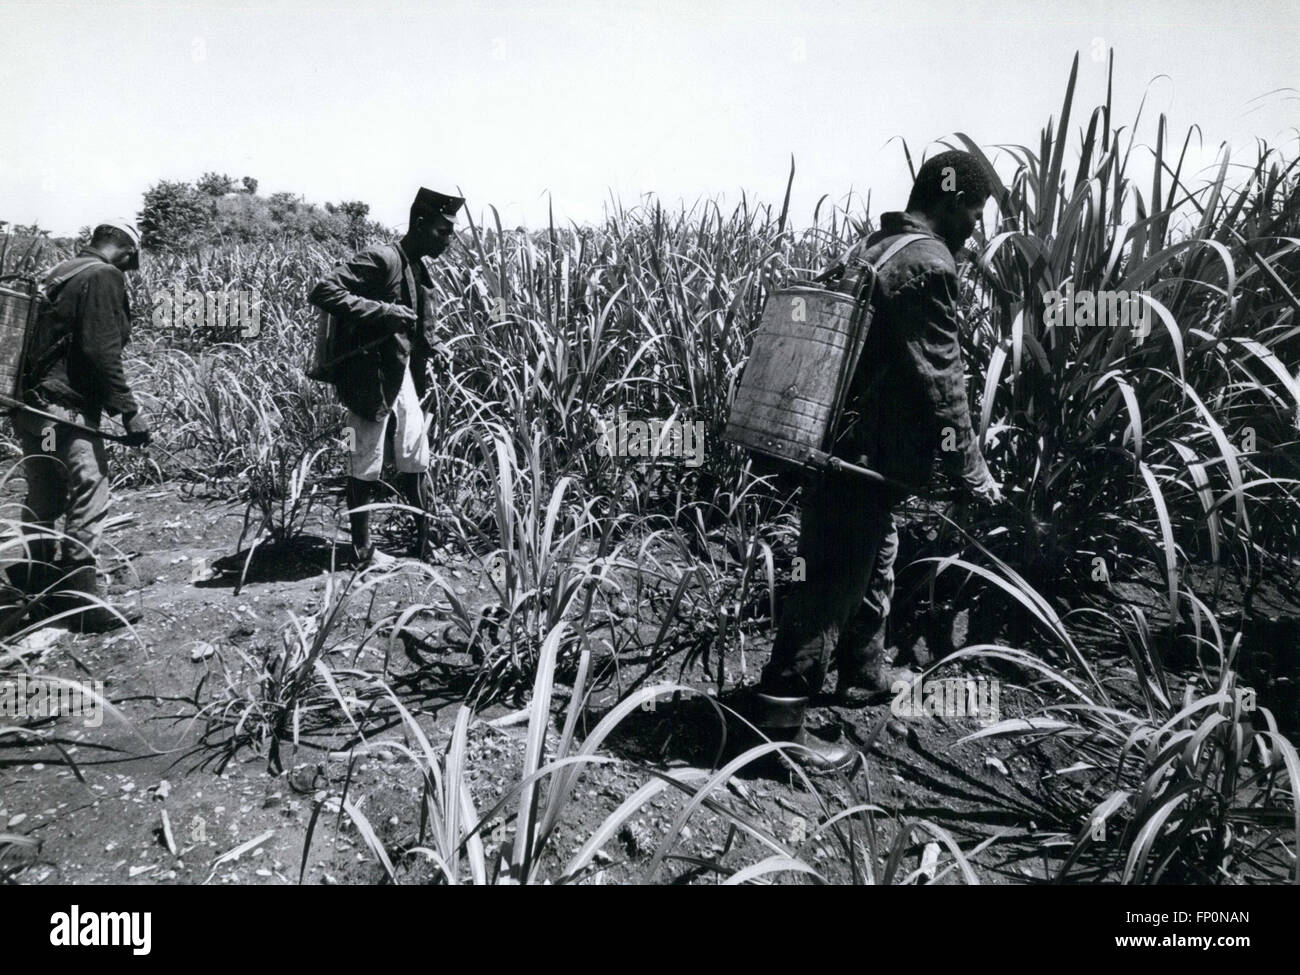 1962 - République dominicaine : les travailleurs de la canne à sucre haïtiens travaillant dans les plantations de sucre Haina-arrosage de la canne avec les pesticides. © Keystone Photos USA/ZUMAPRESS.com/Alamy Live News Banque D'Images